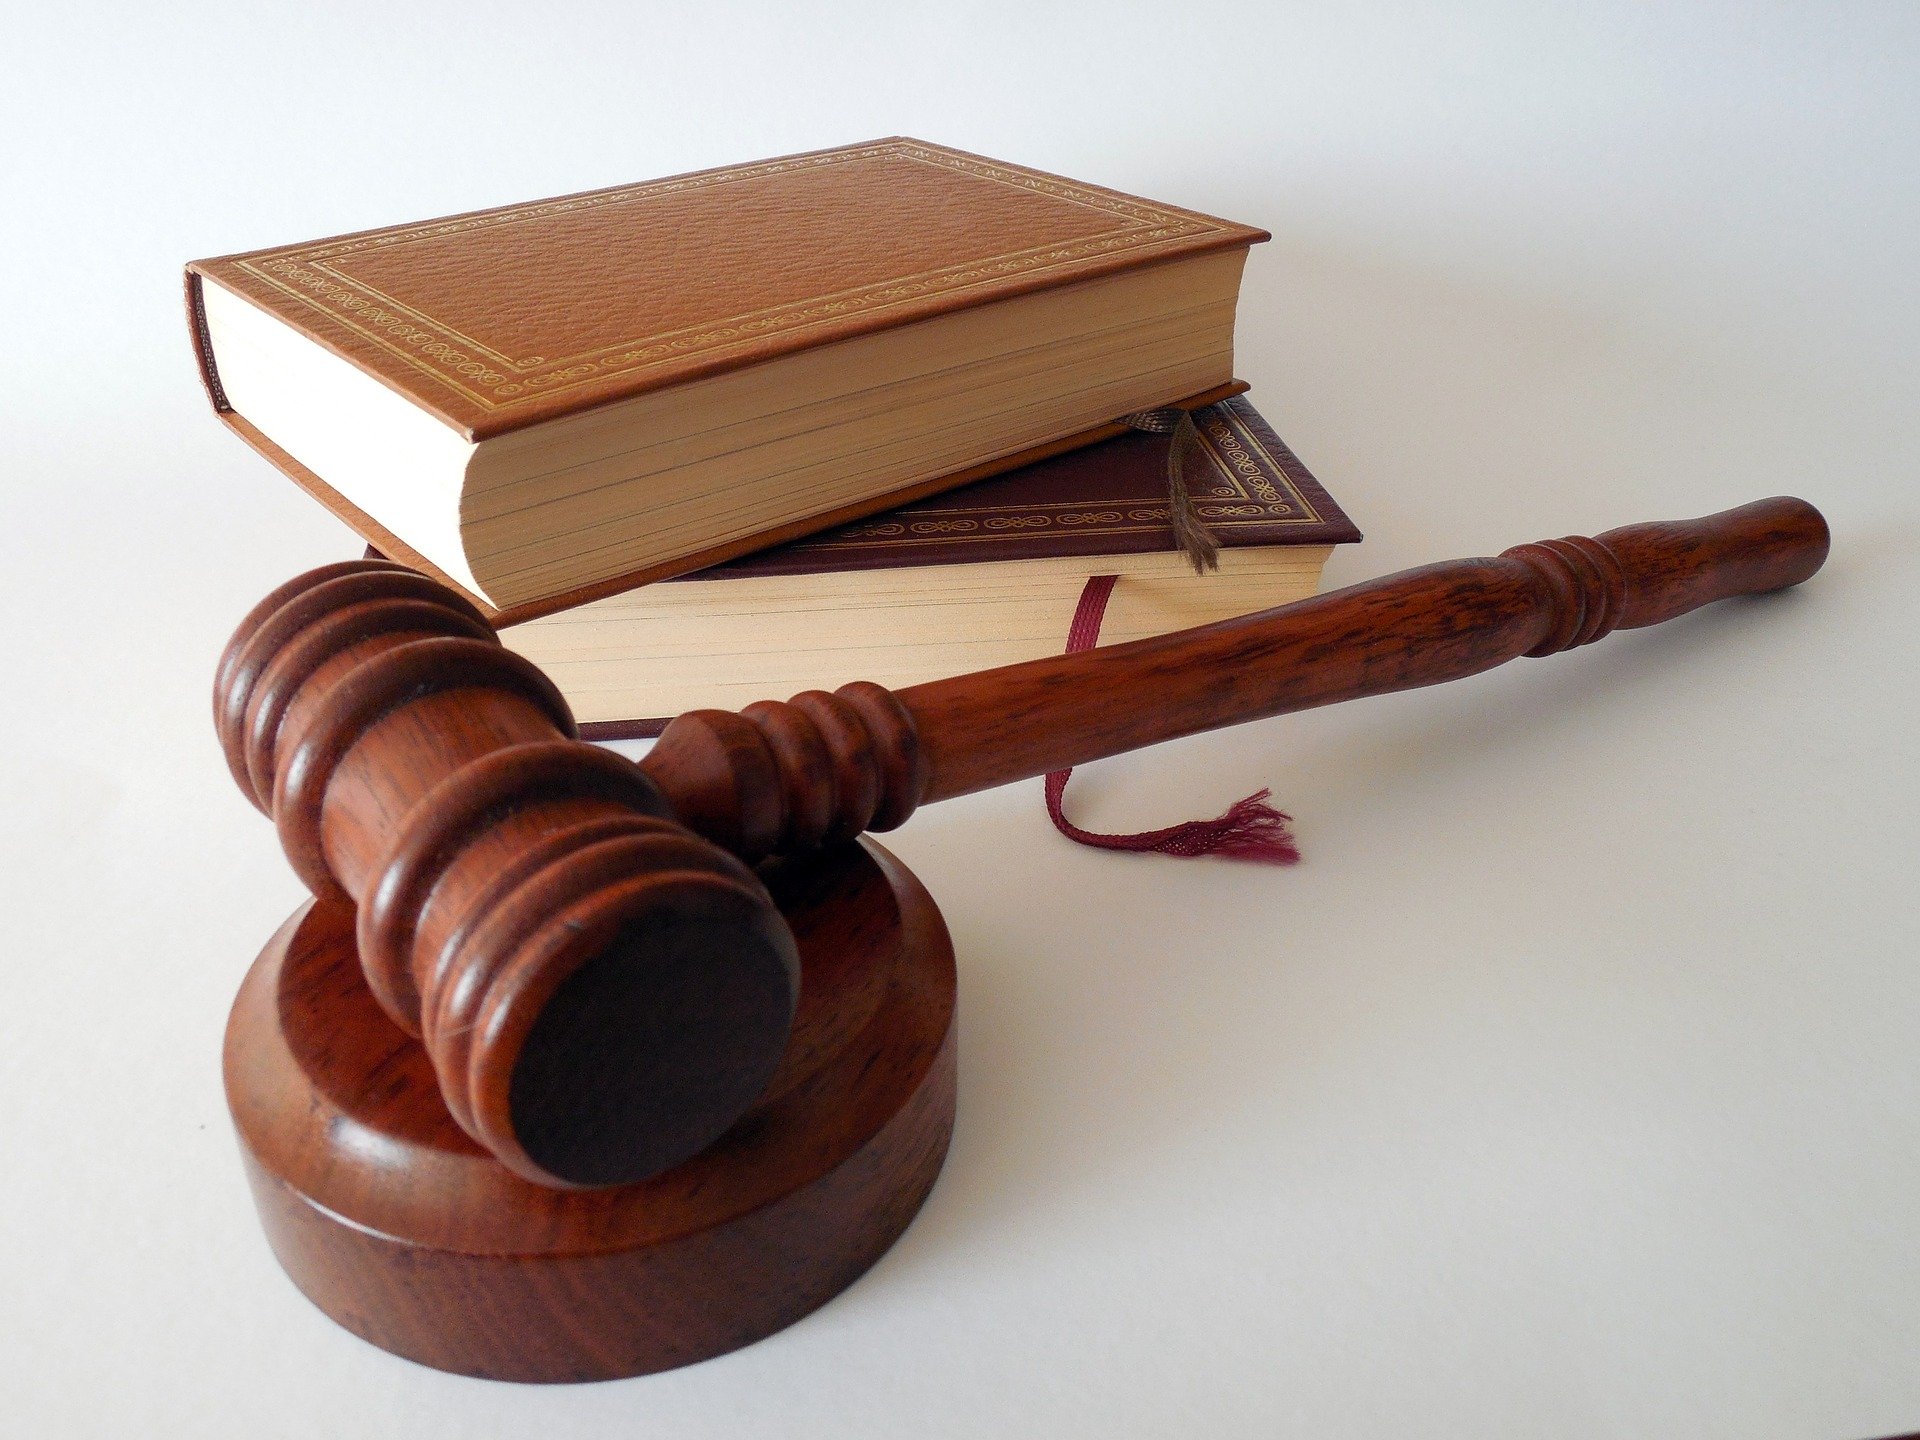 Gerichtshammer und Gesetzbücher